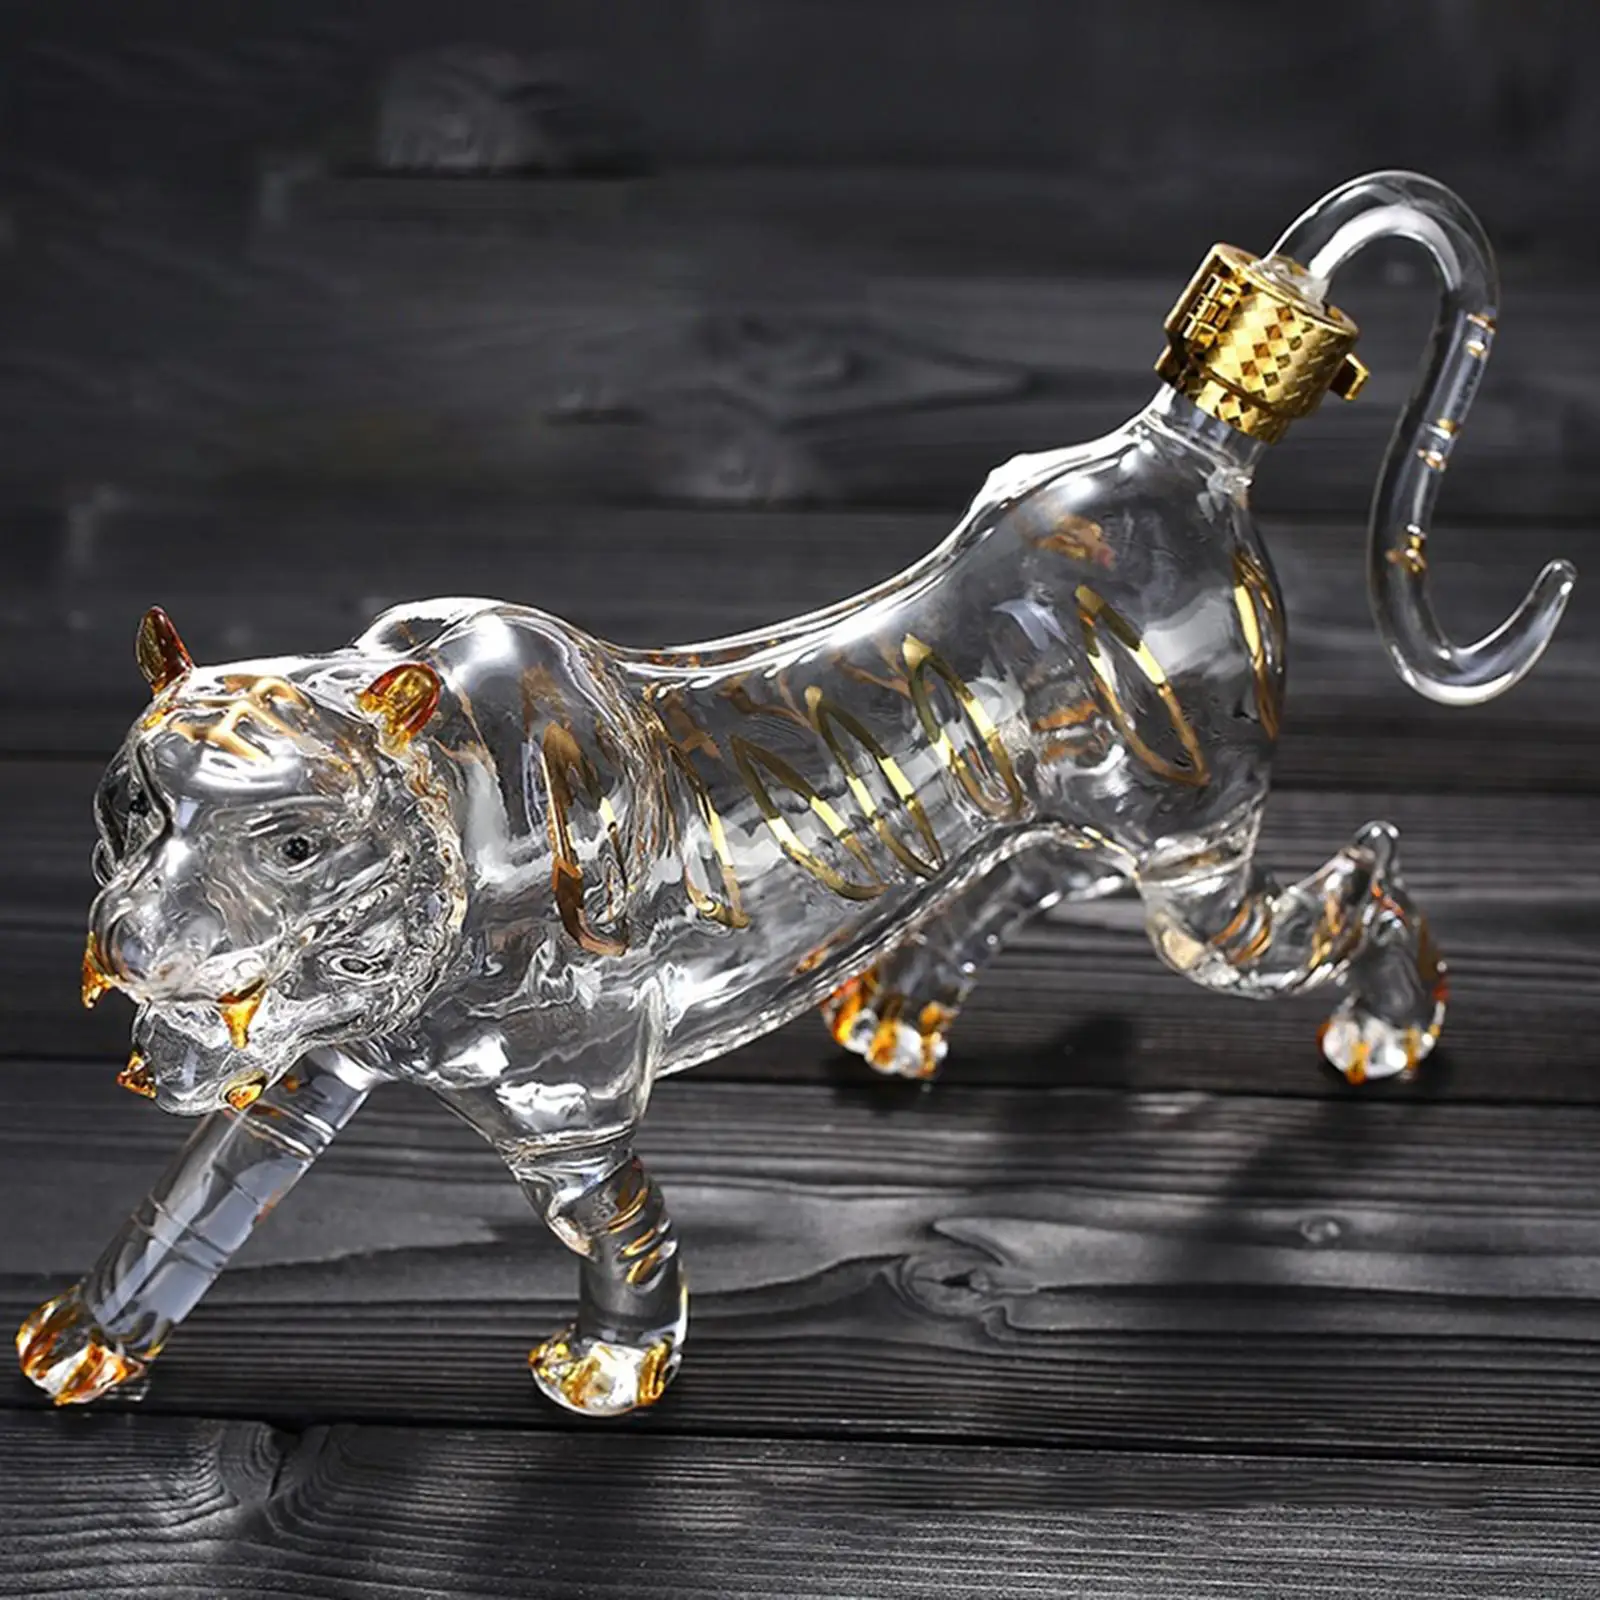 High Borosilicate Glass Animal Whisky Decanter 500ml Wine Dispenser for Liquor Vodka Bourbon Pourer Beer Juice Home